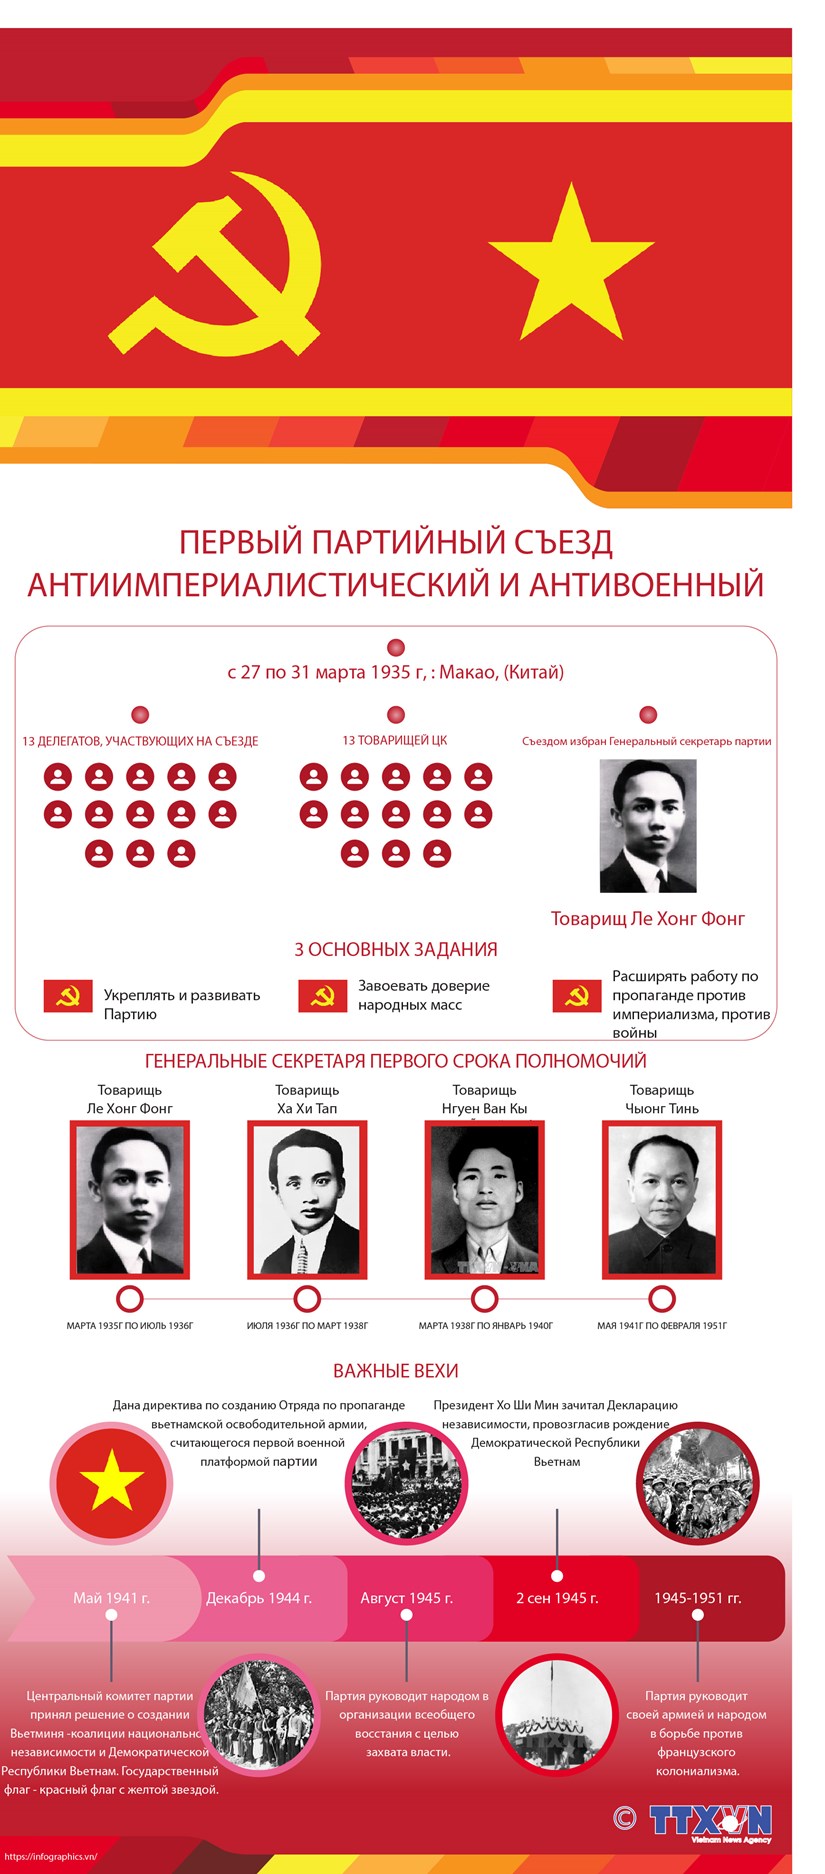 Первыи партииныи съезд: антиимпериалистическии и антивоенныи hinh anh 1